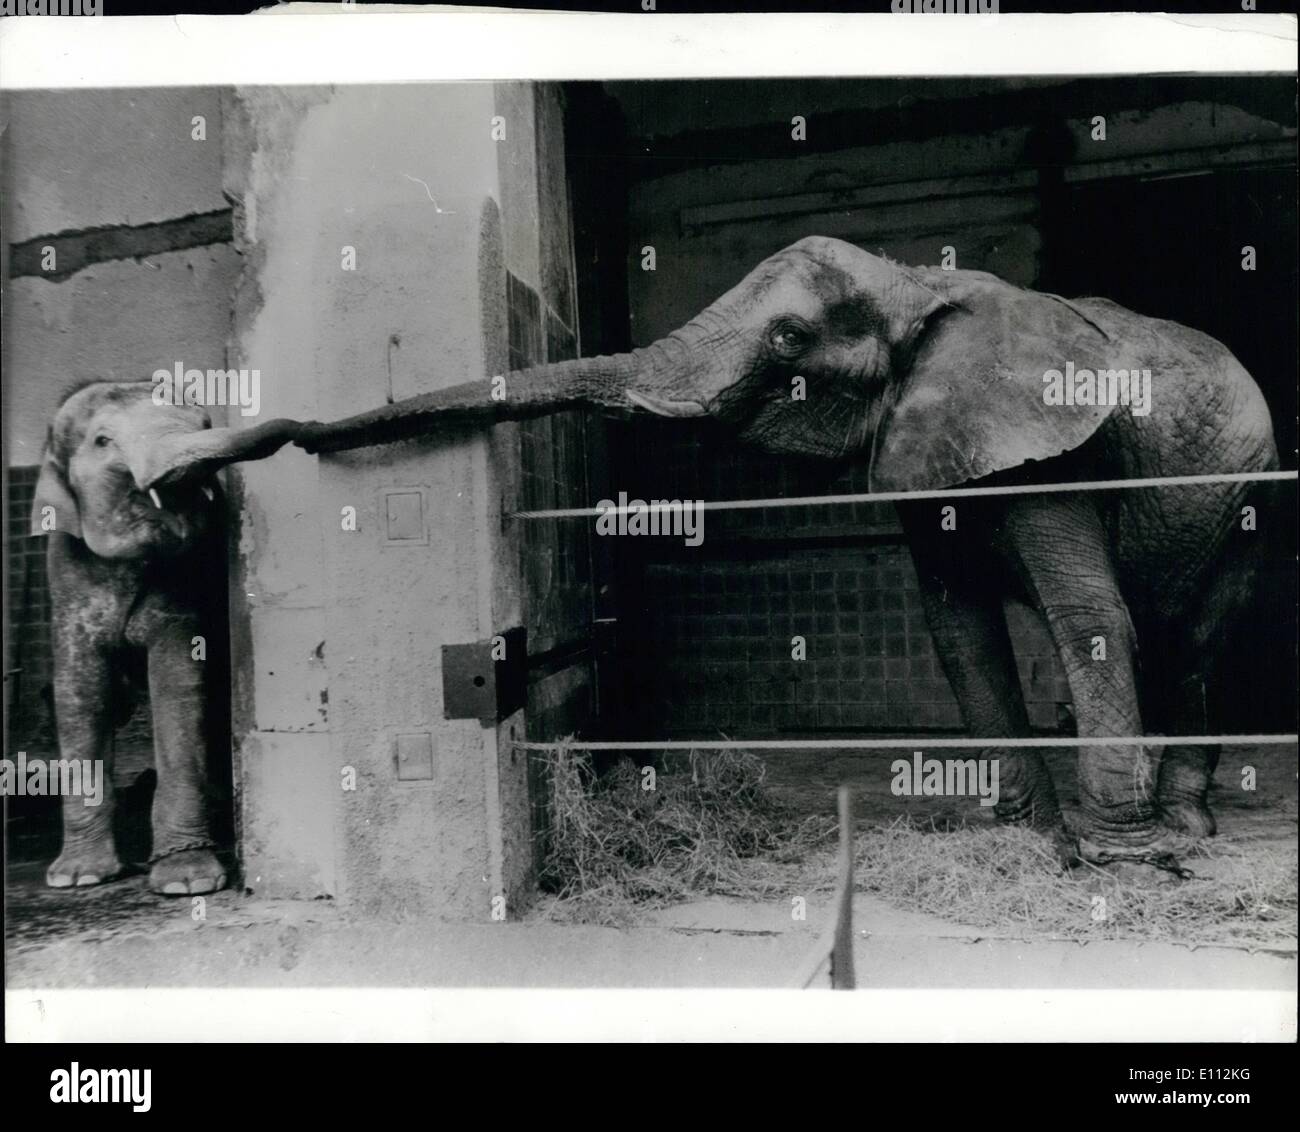 Willkommen Sie 5. Mai 1975 - im Münchner Zoo. Eine alte etablierte Elefanten resident im Zoo von München, erstreckt sich einen einladende Stamm auf eines der zwei junge afrikanischen Elefanten, die im Zoo von Kopenhagen eingetroffen sind. Stockfoto